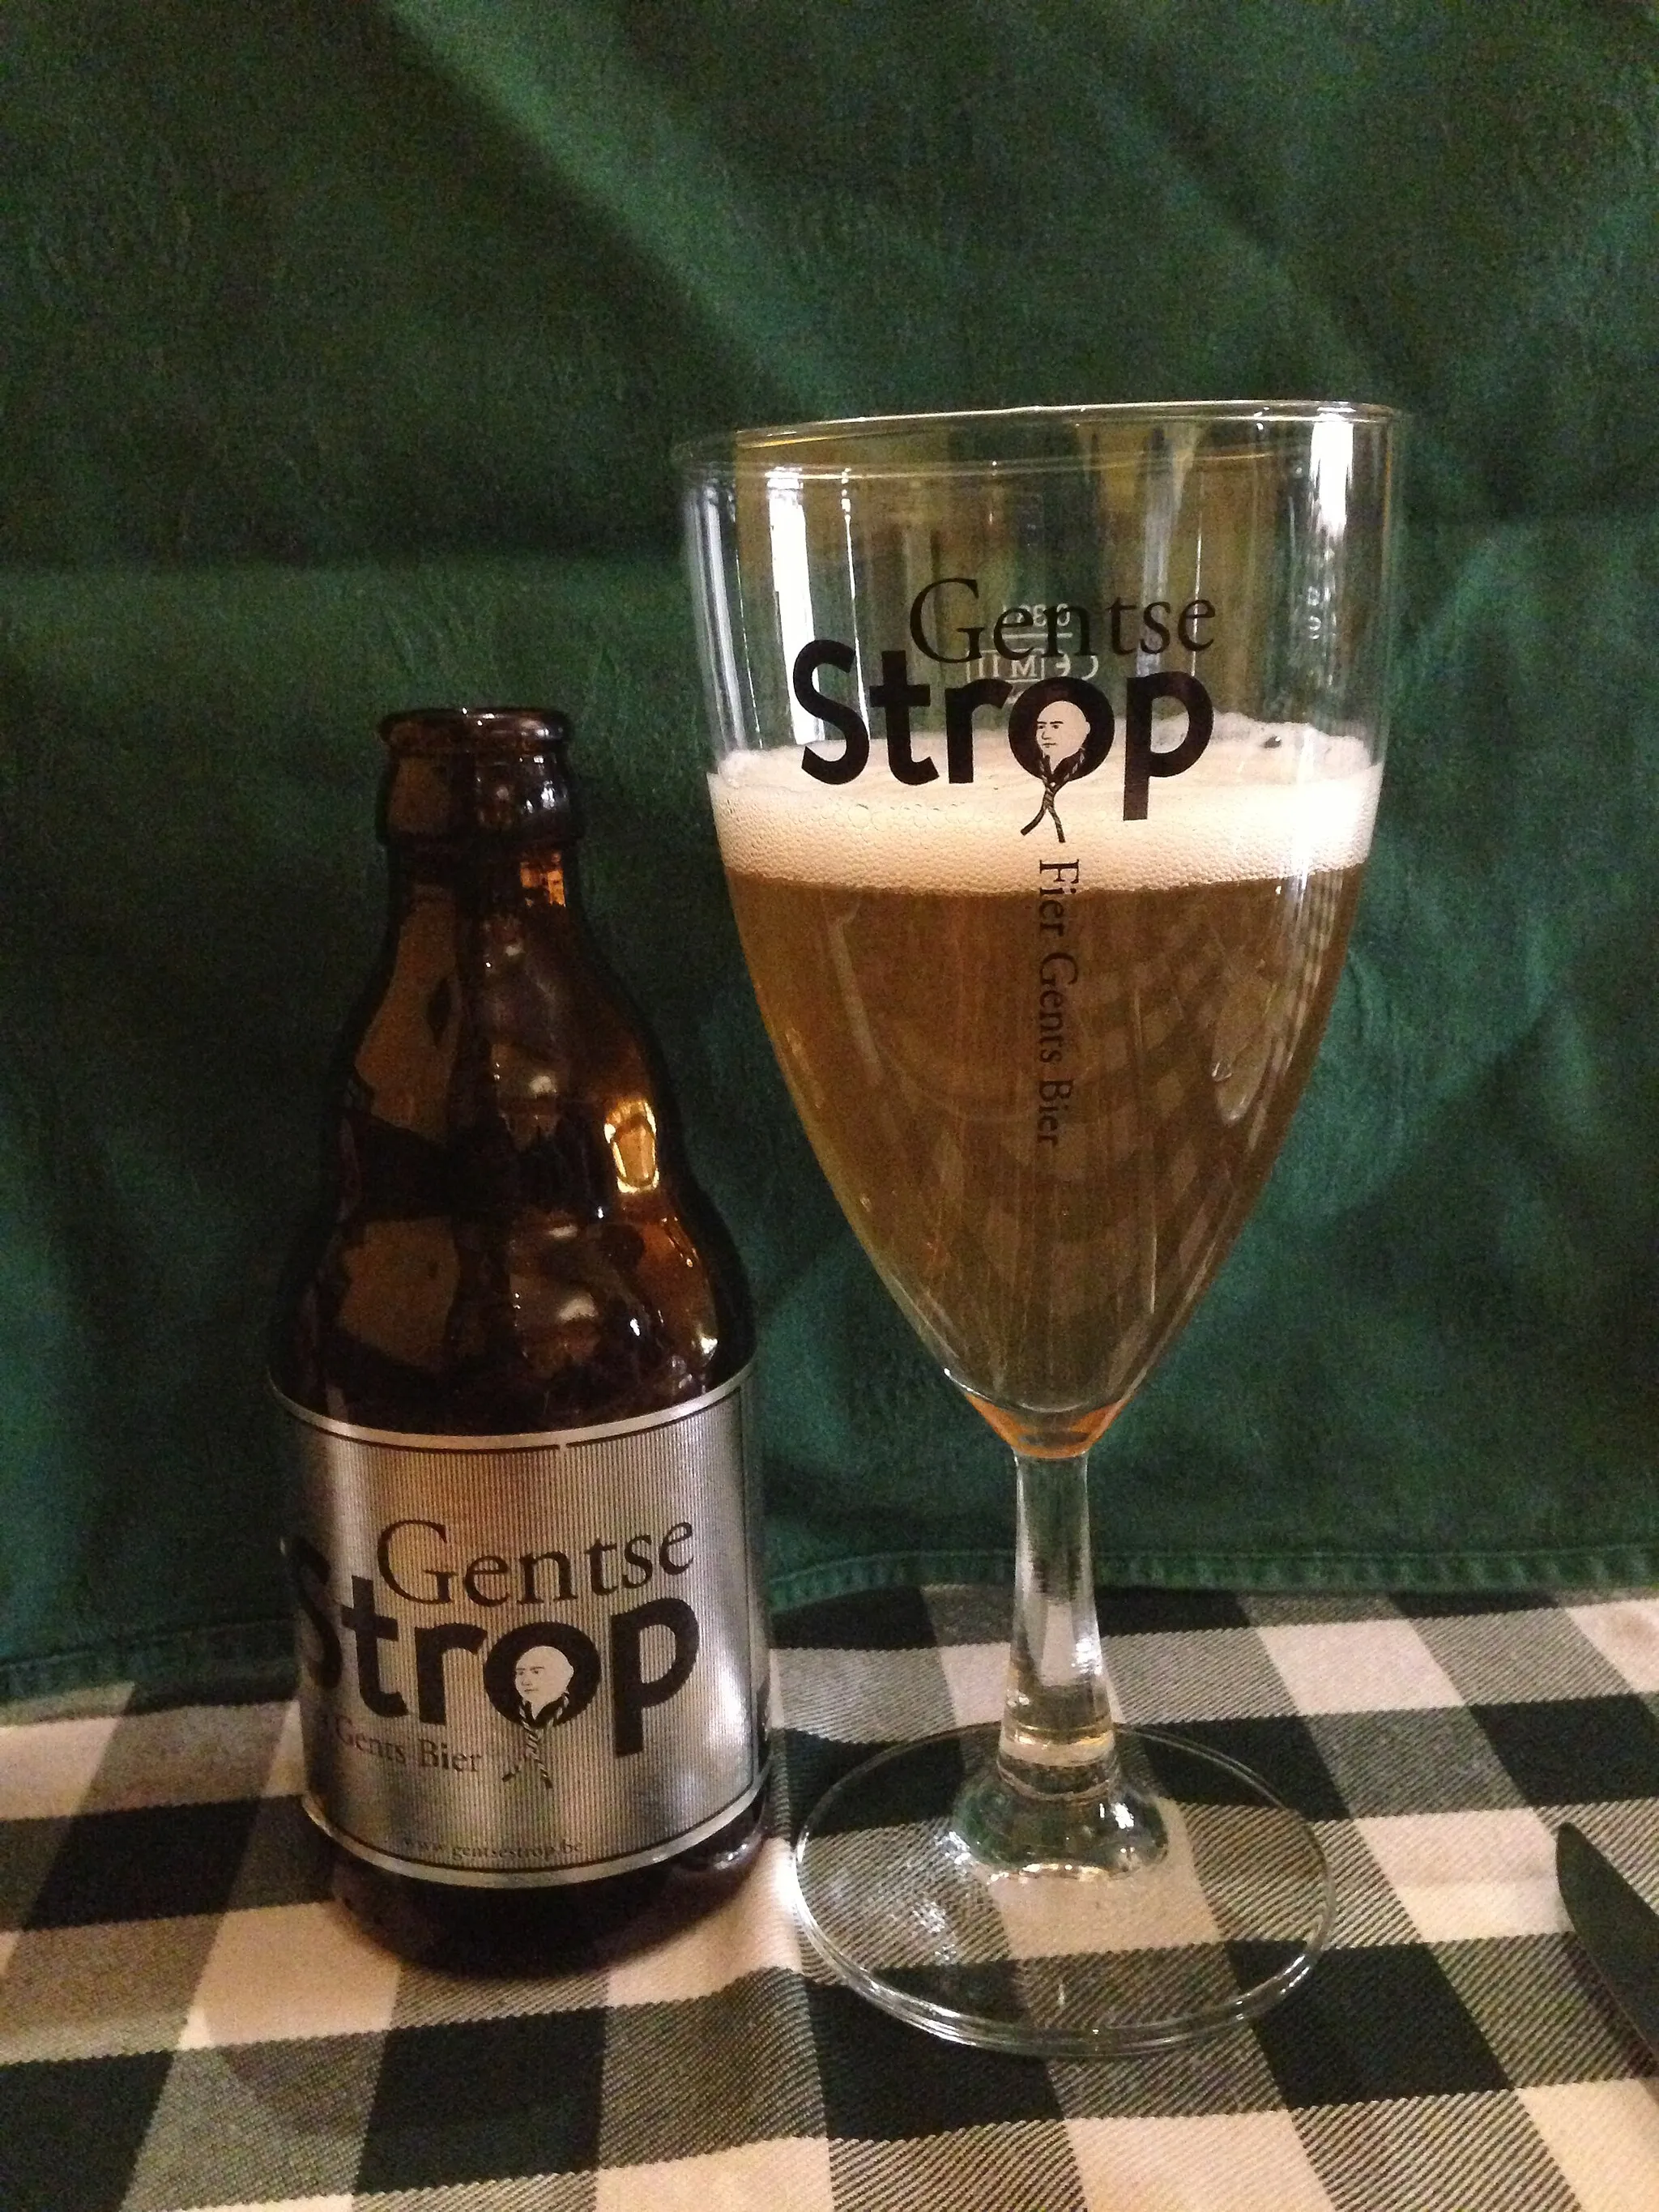 Photo showing: Gentse strop beer